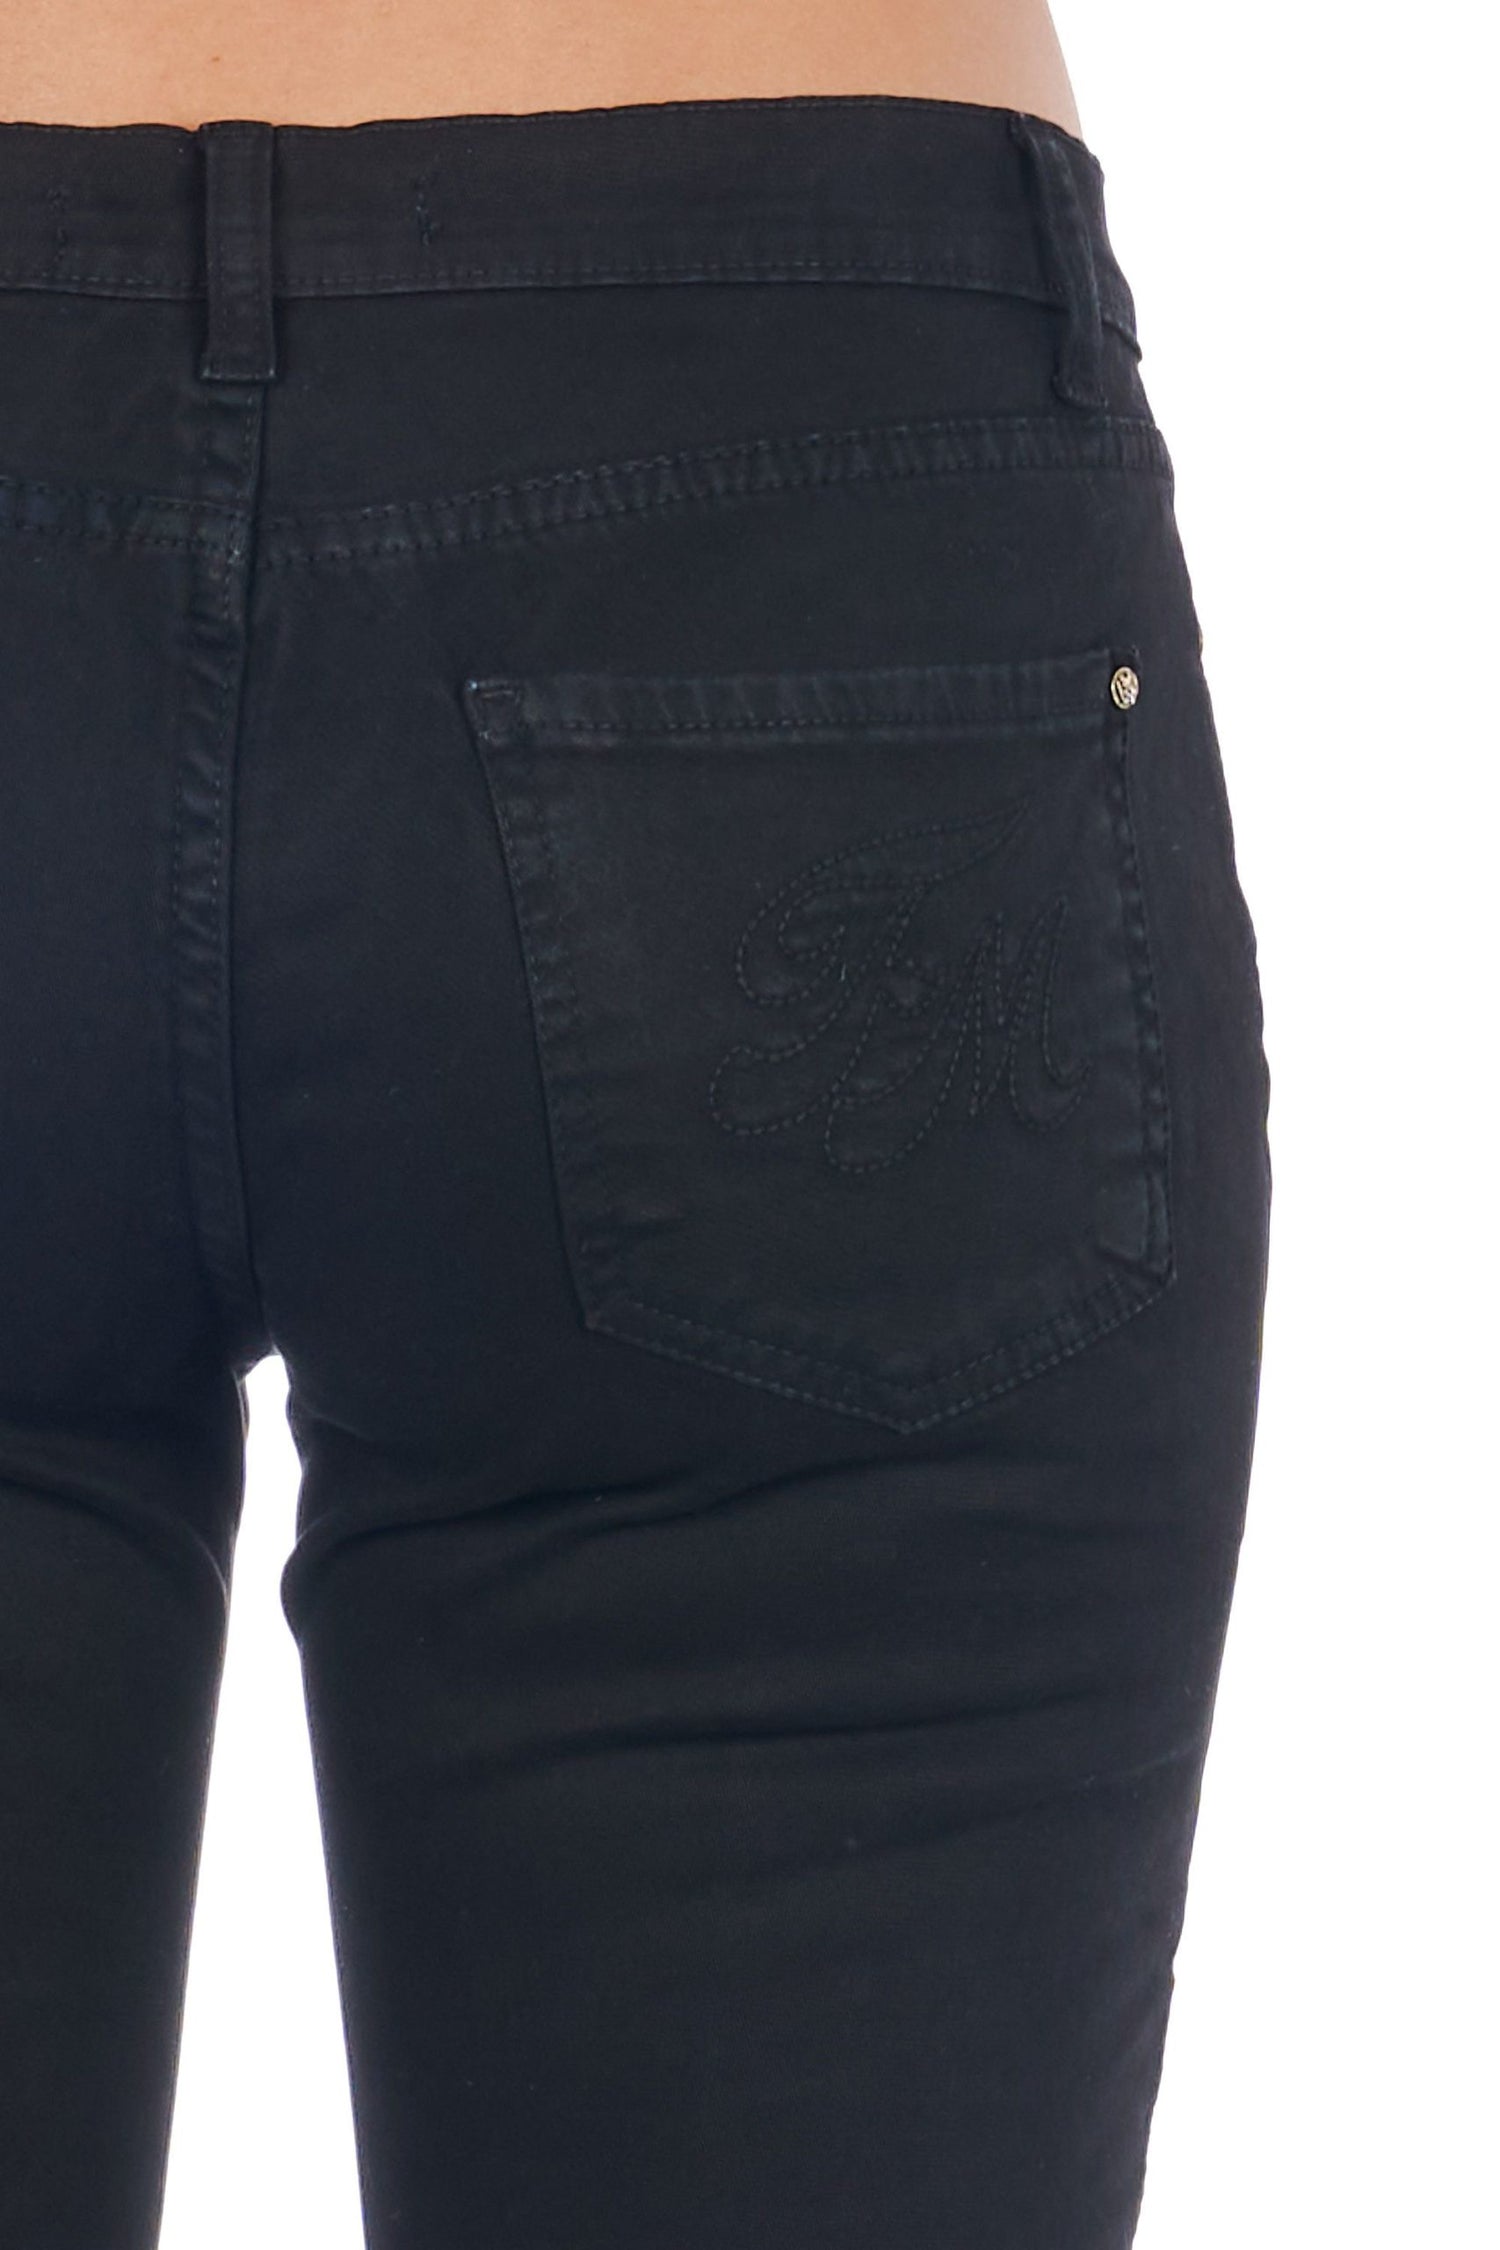 Frankie Morello Black Cotton Jeans & Pant - DEA STILOSA MILANO